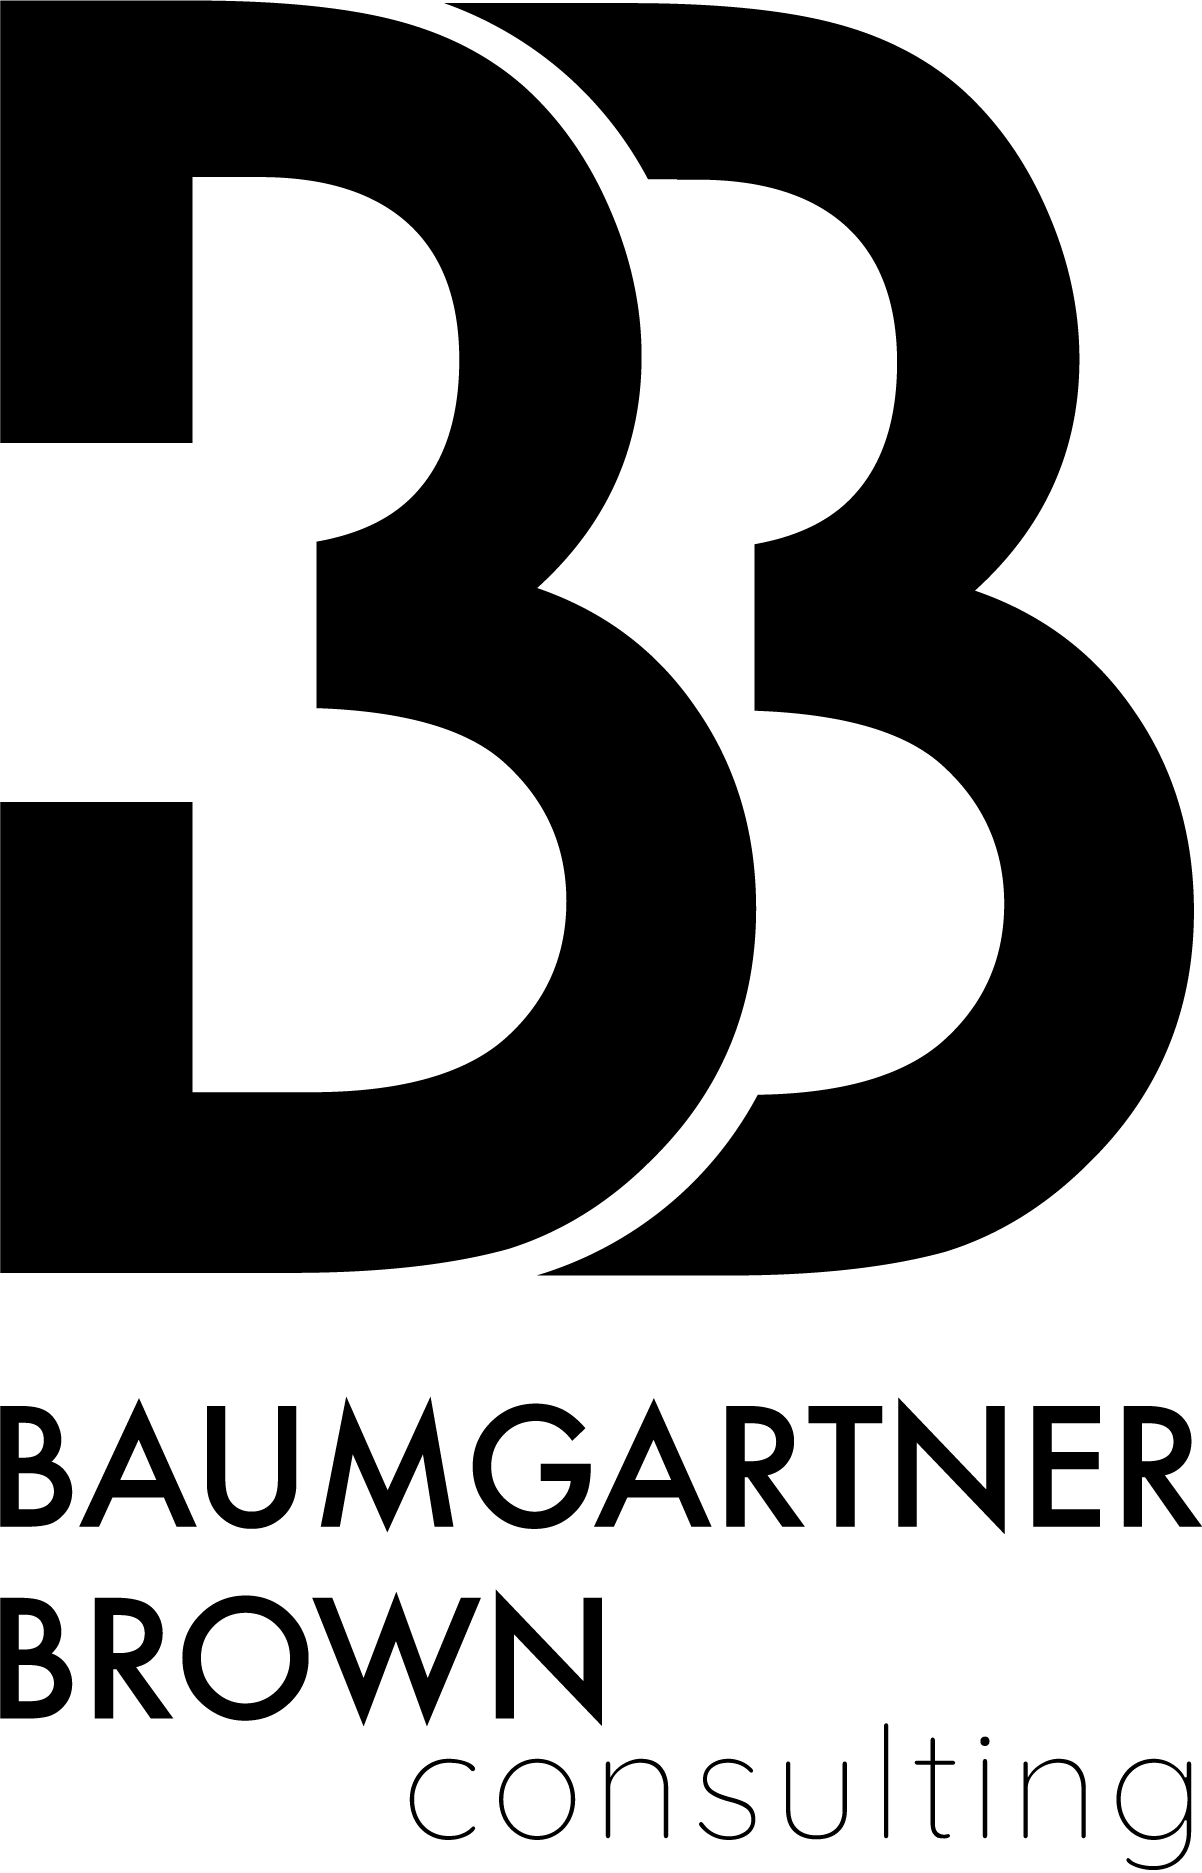 Baumgartner Brown Consulting